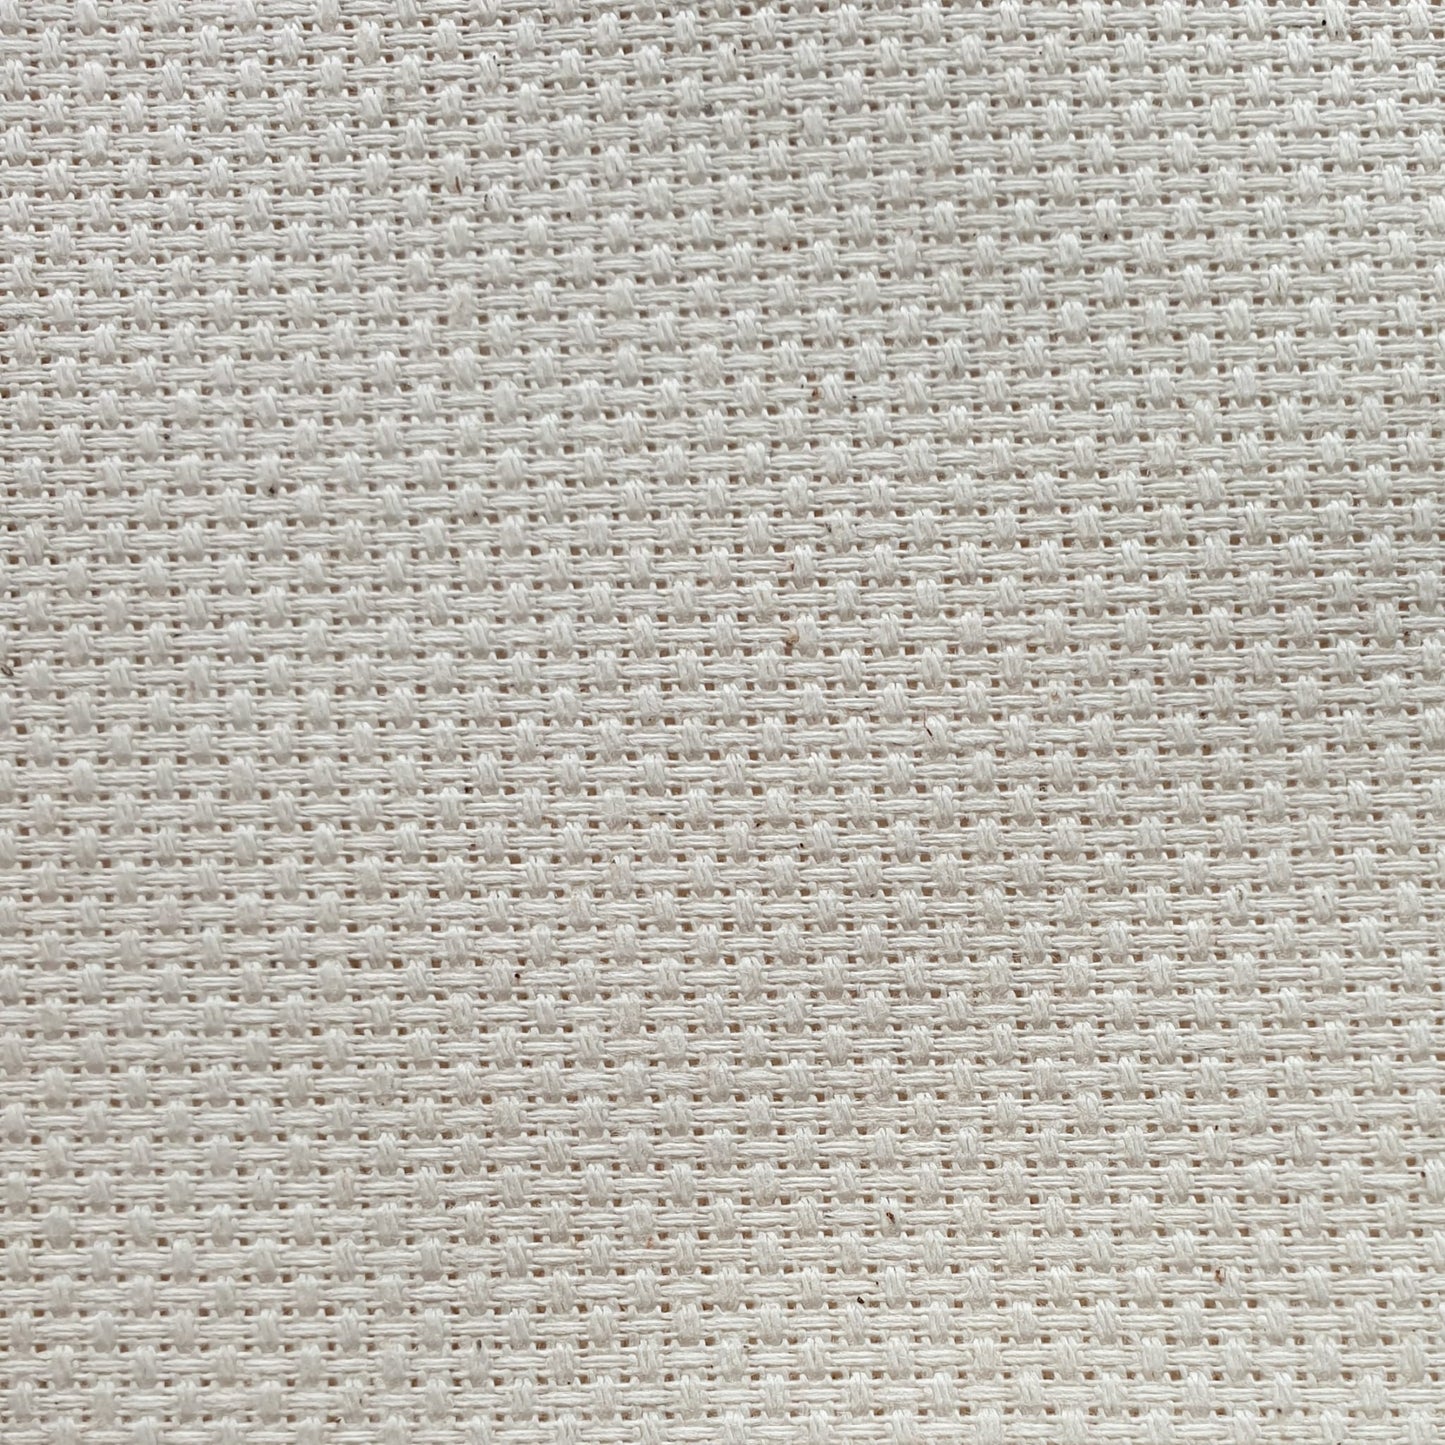 Tessuto per Punto Croce | 170cm x 100cm | 100% cotone | |44 fori 11 ct. 4.4 punti per centimetro | made in italy | tela aida per ricamo.